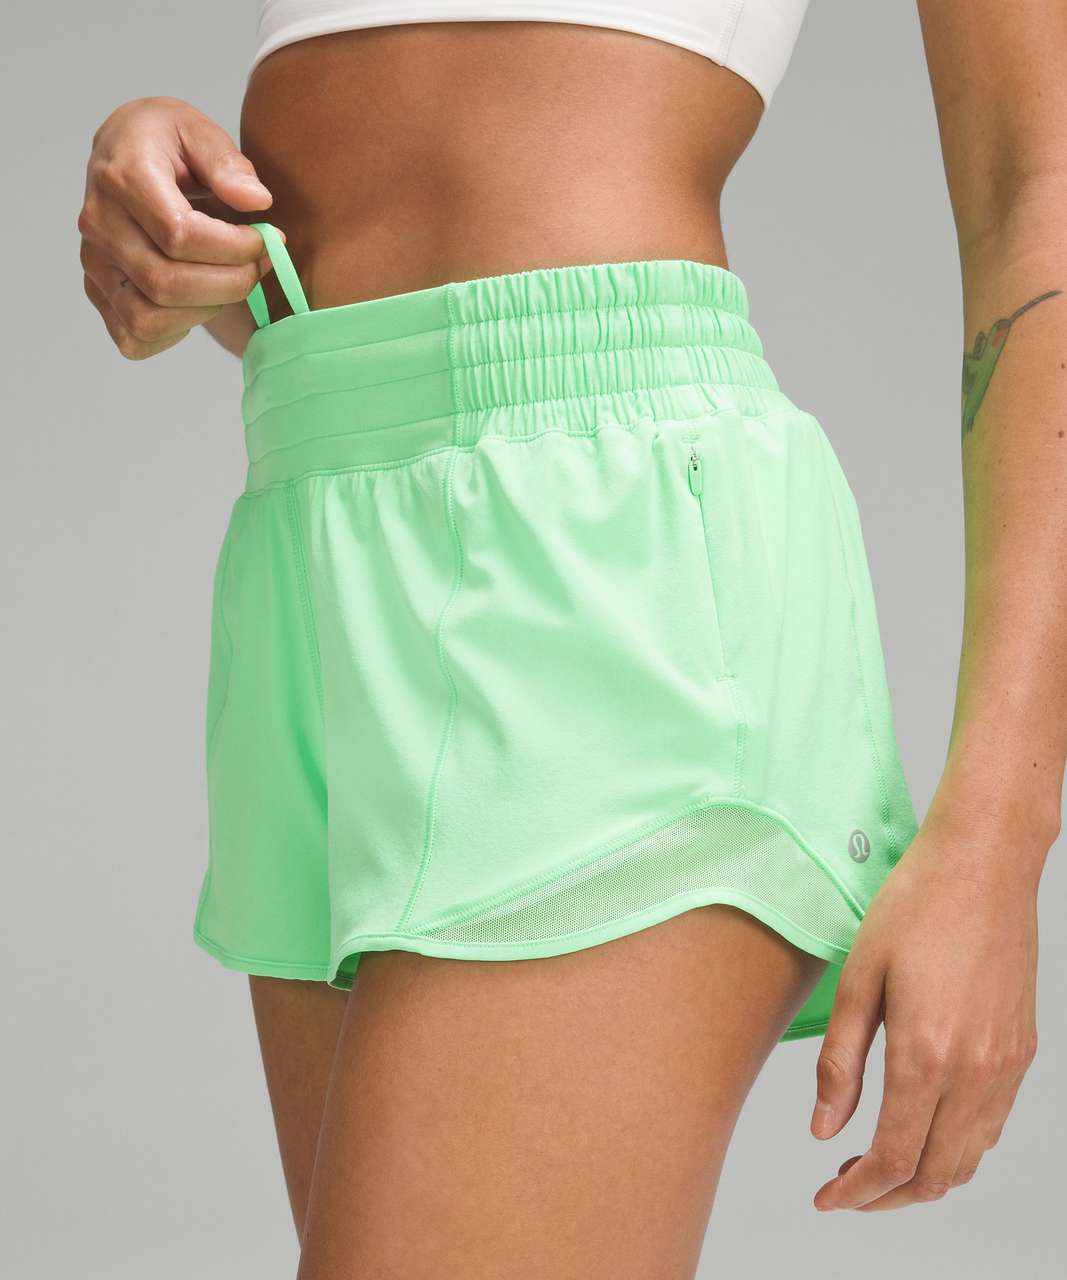 How to Wash Lululemon Hotty Hot Shorts Correctly - Playbite